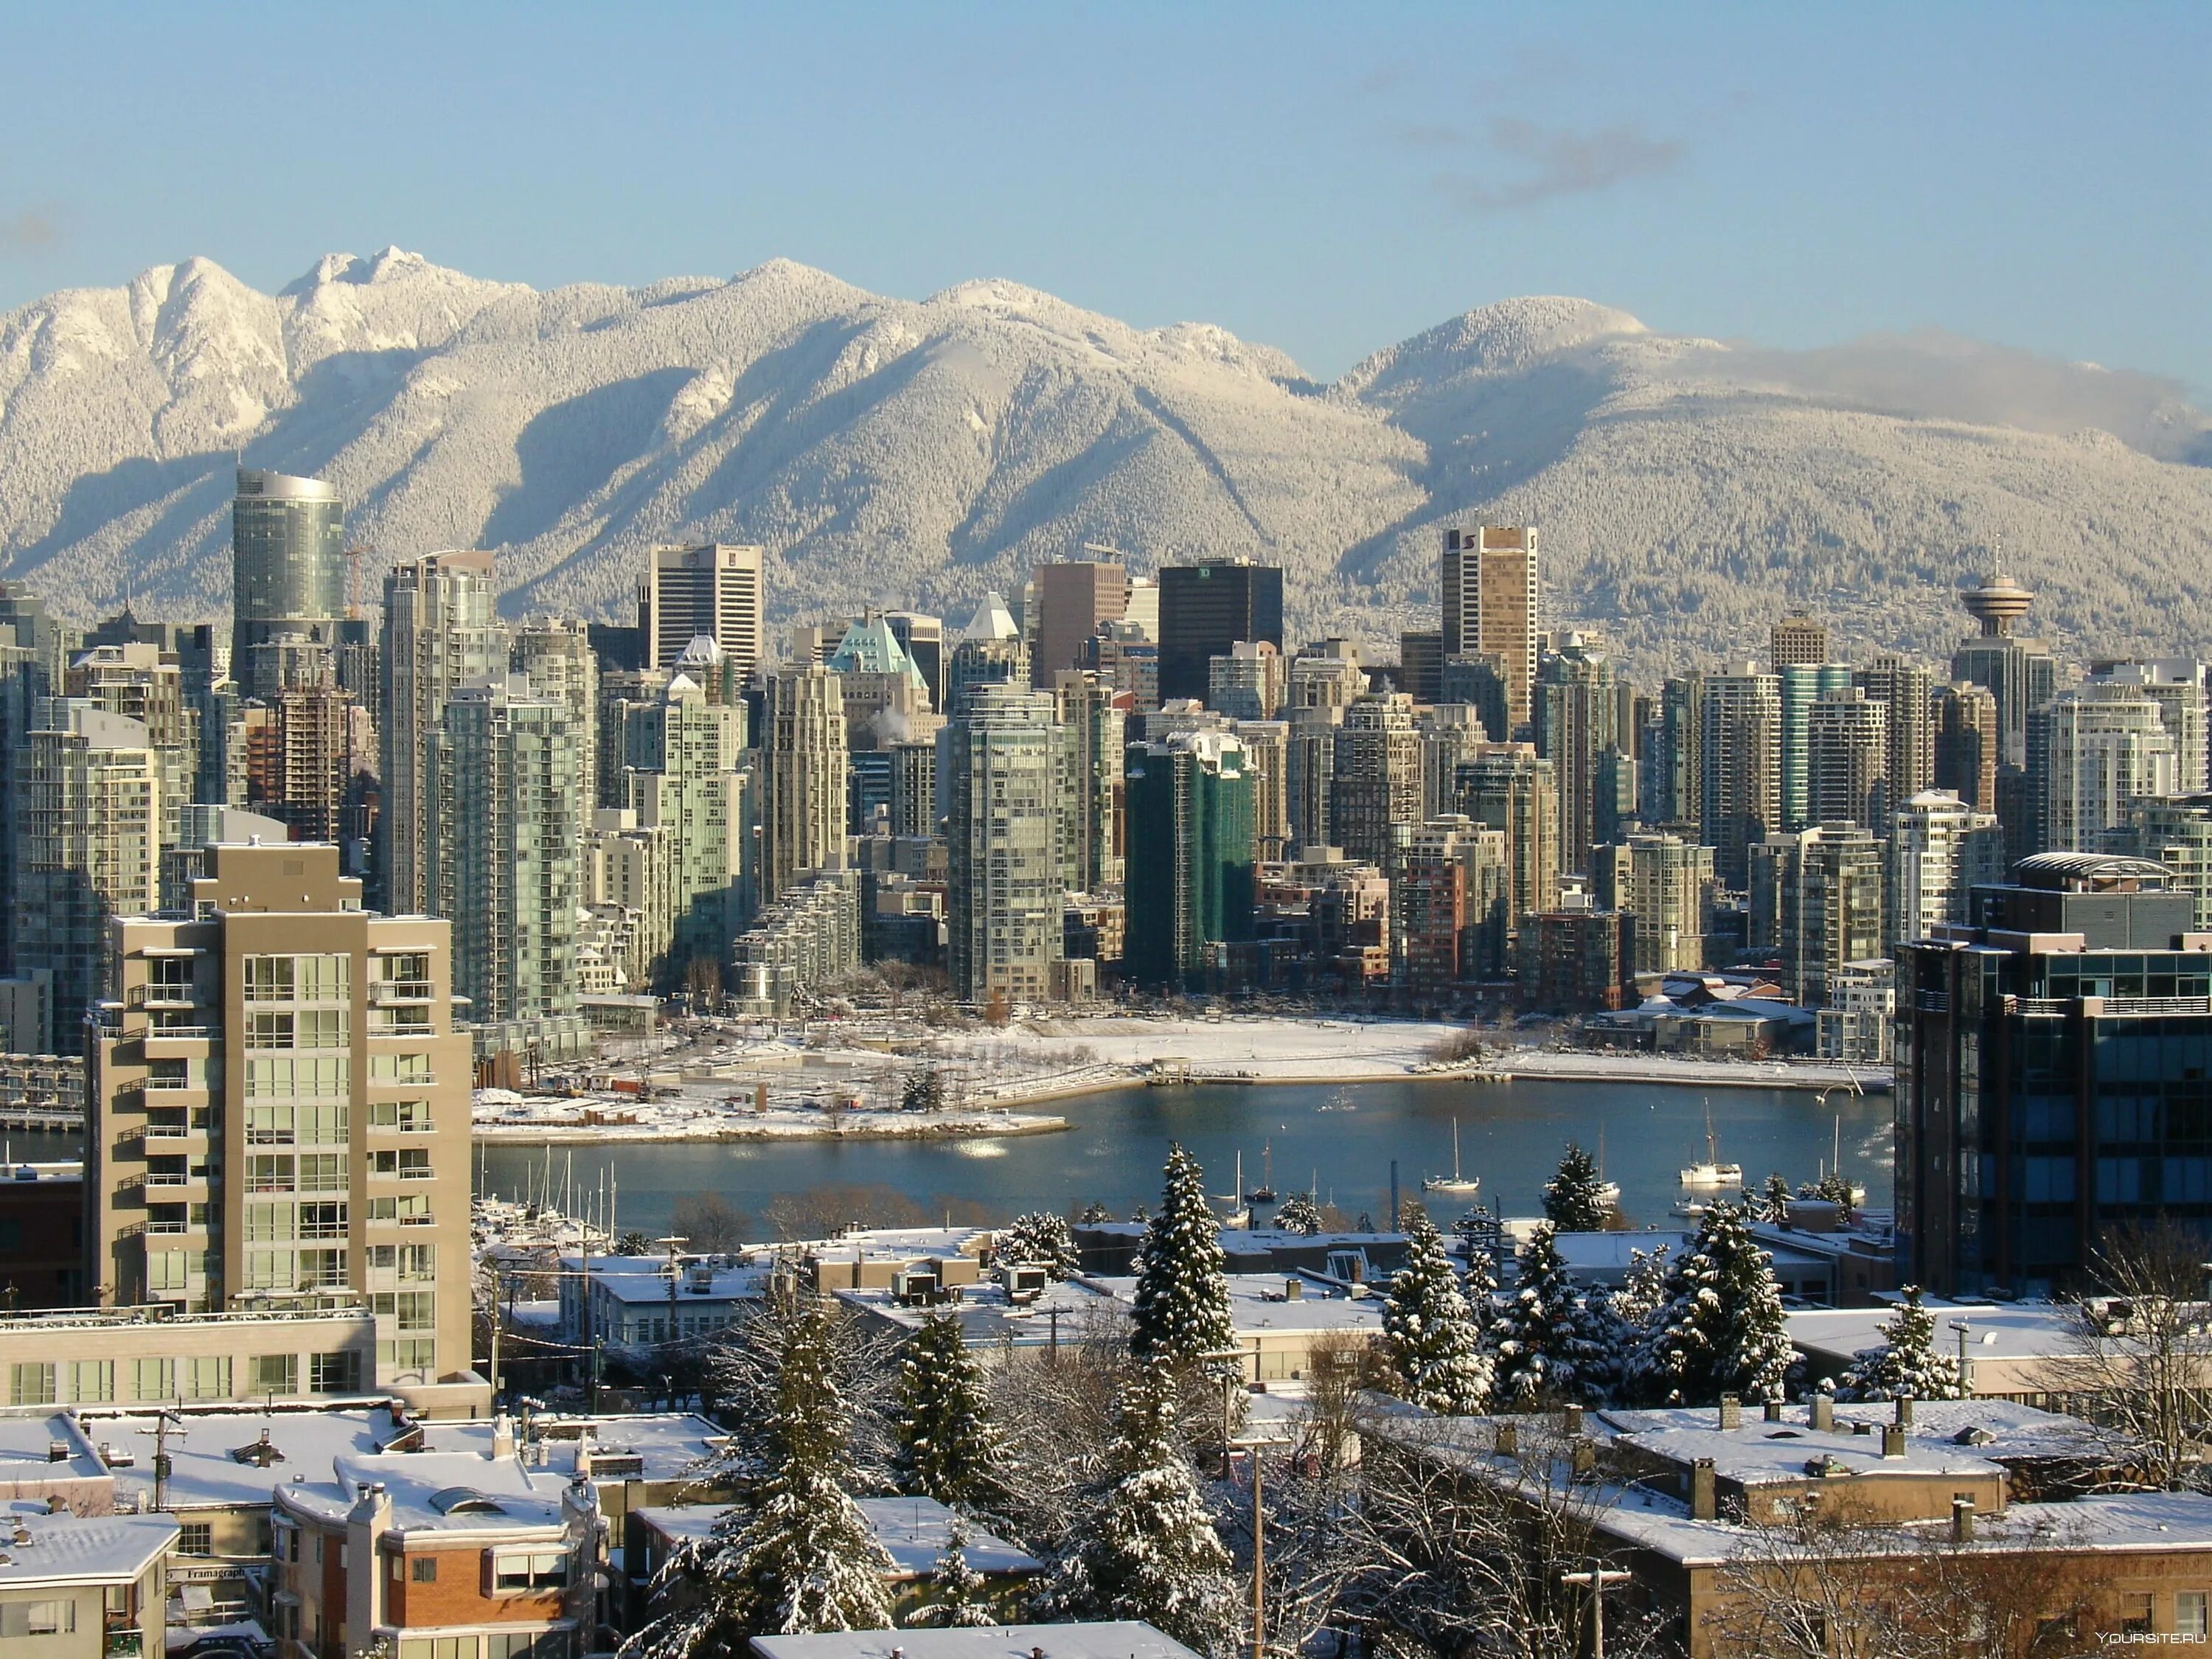 Ванкувер (город в Канаде) города Канады. Климат Ванкувера Канада. Ванкувер город в Канаде зимой. Окраины Ванкувер город в Канаде.